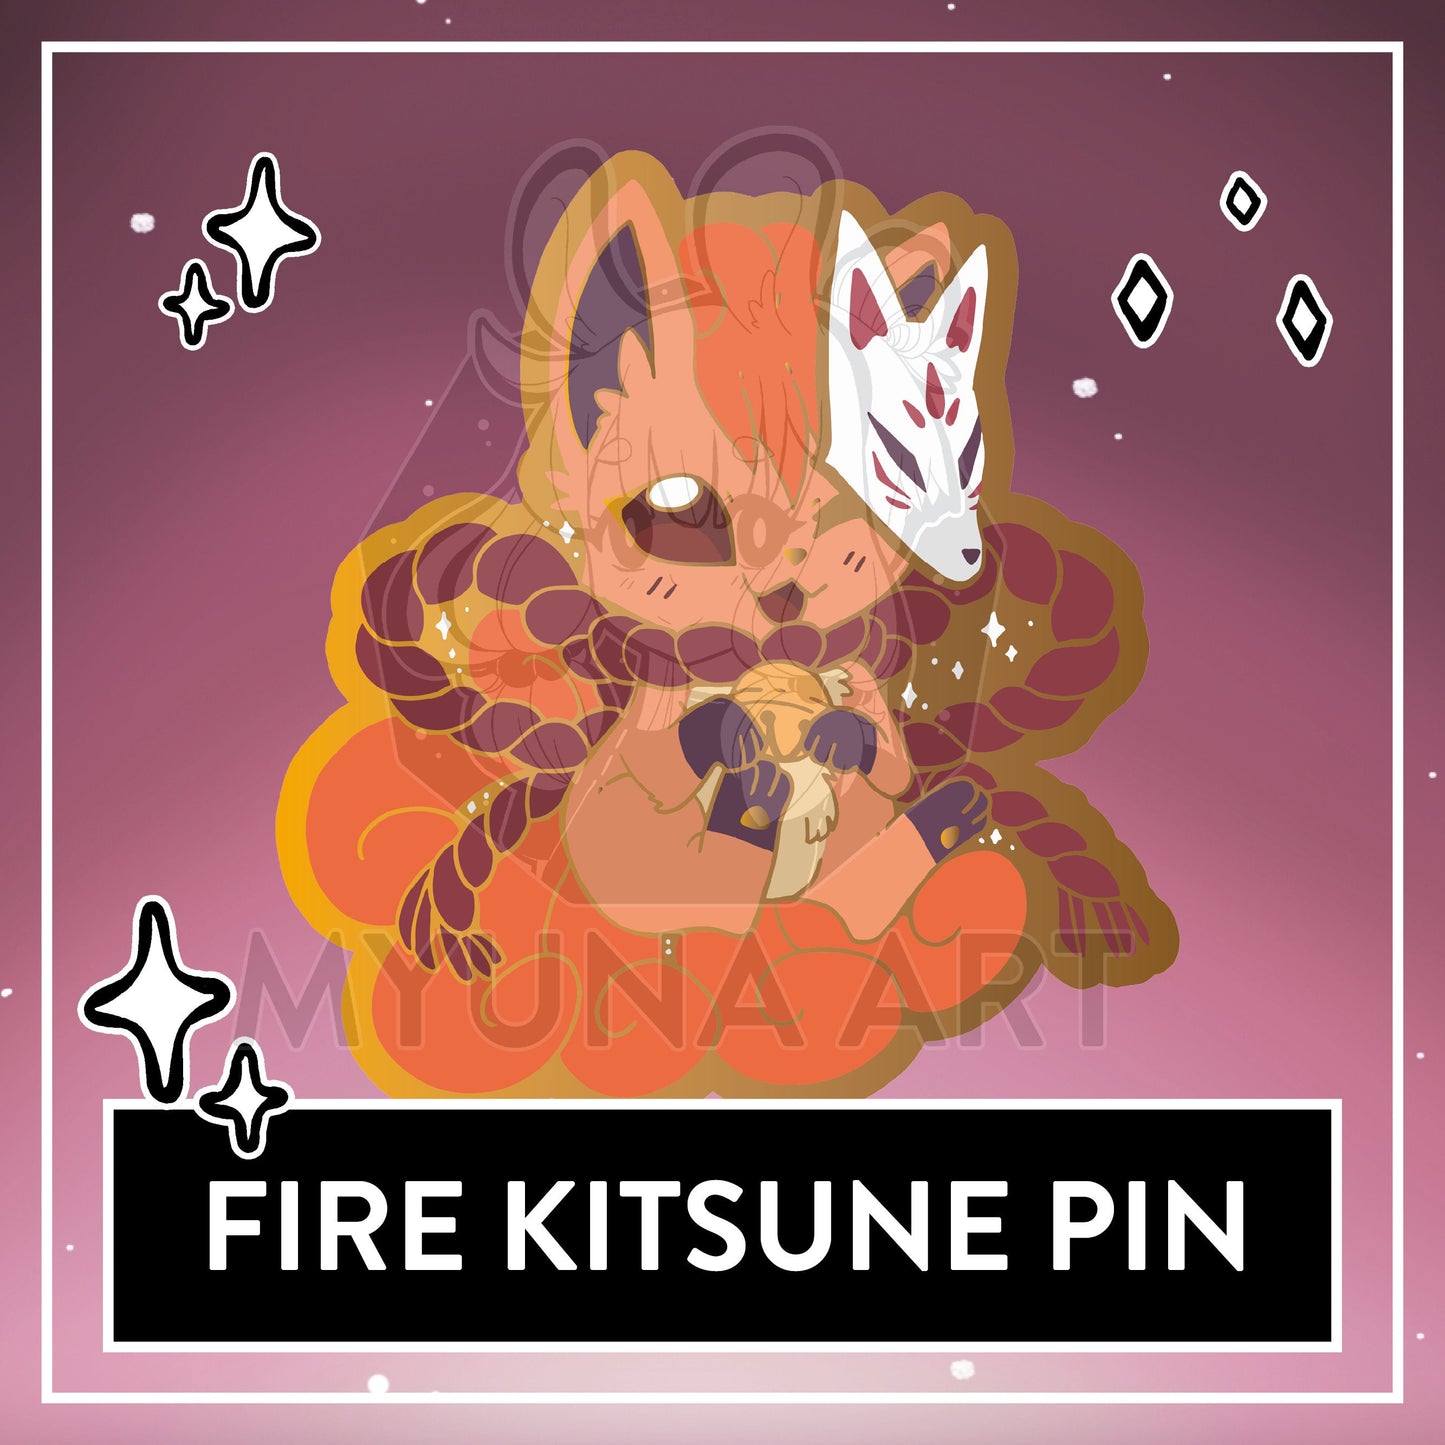 Kitsune Hard Enamel Pin - Fire Kistune & Hisui Kitsune, Kitsune Mask Pins, Japan inspired fox pin